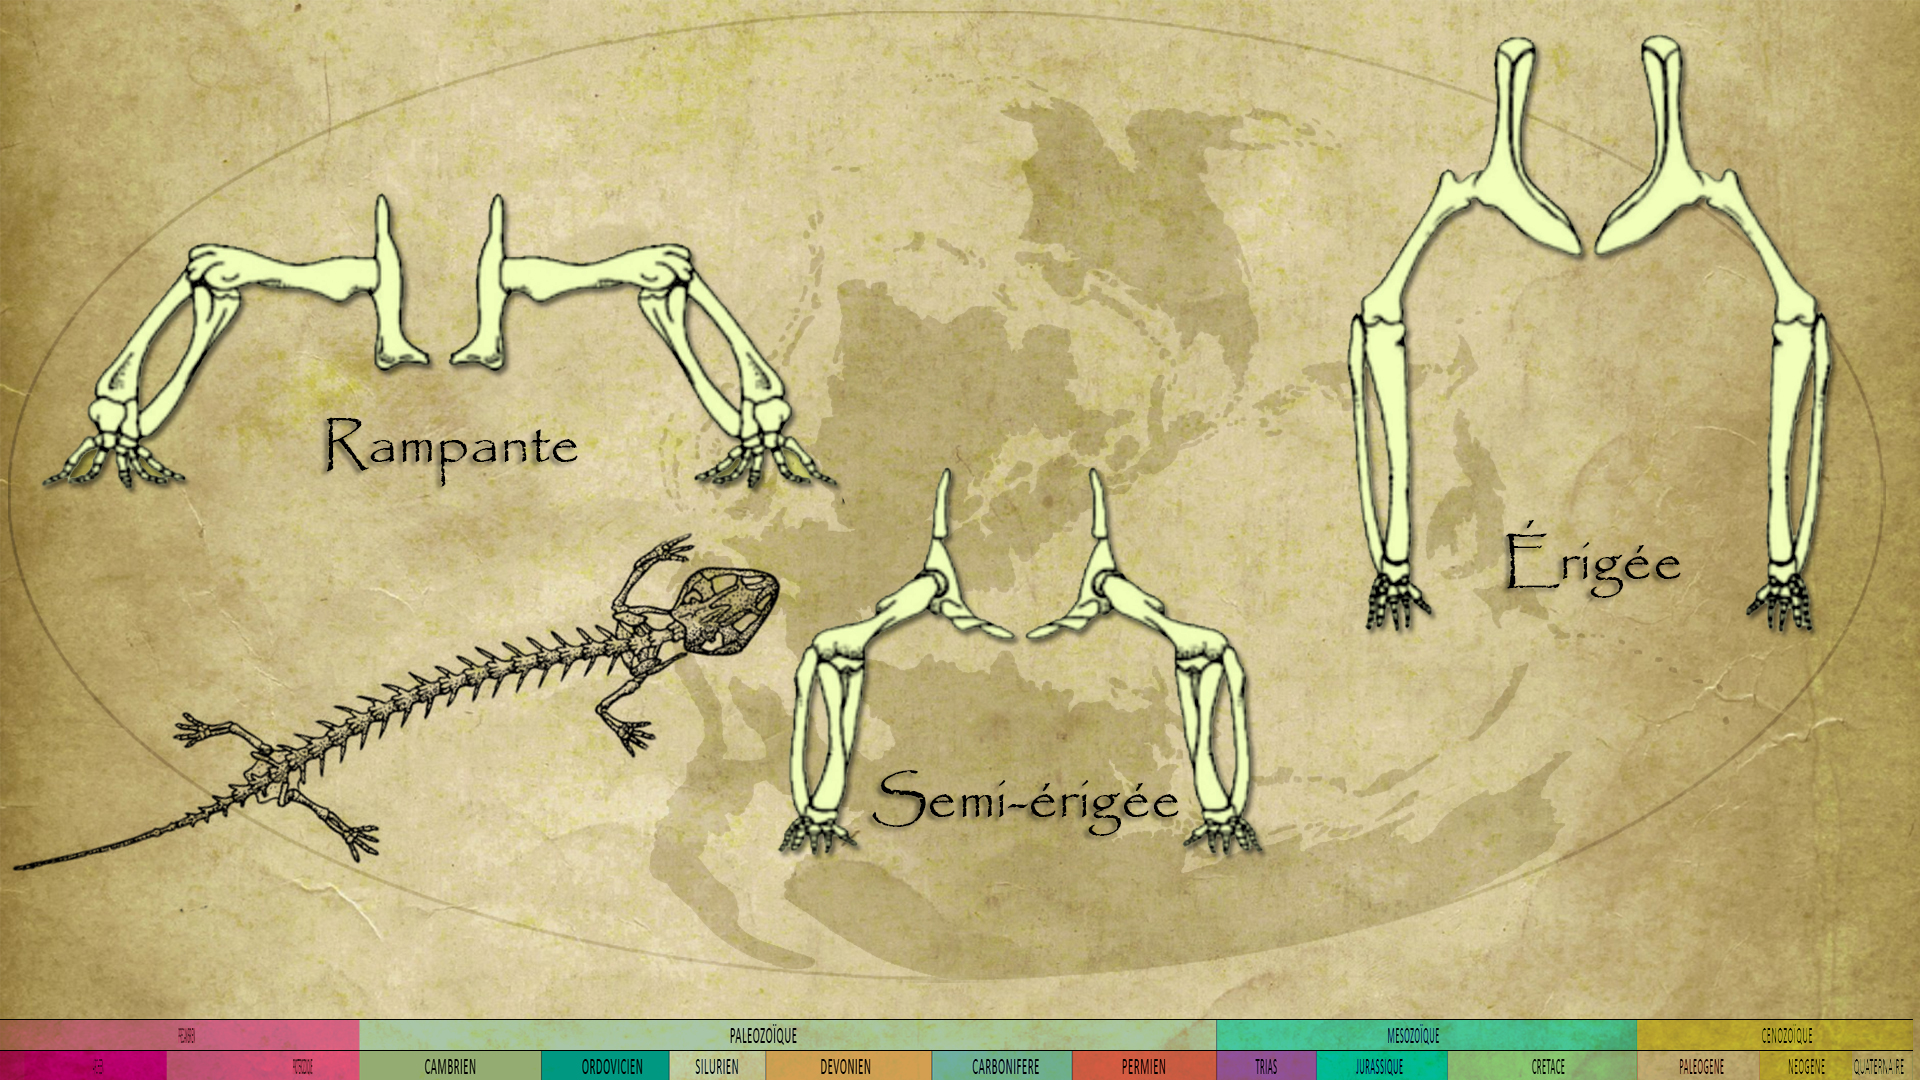 Les différentes postures au cours de l'évolution.